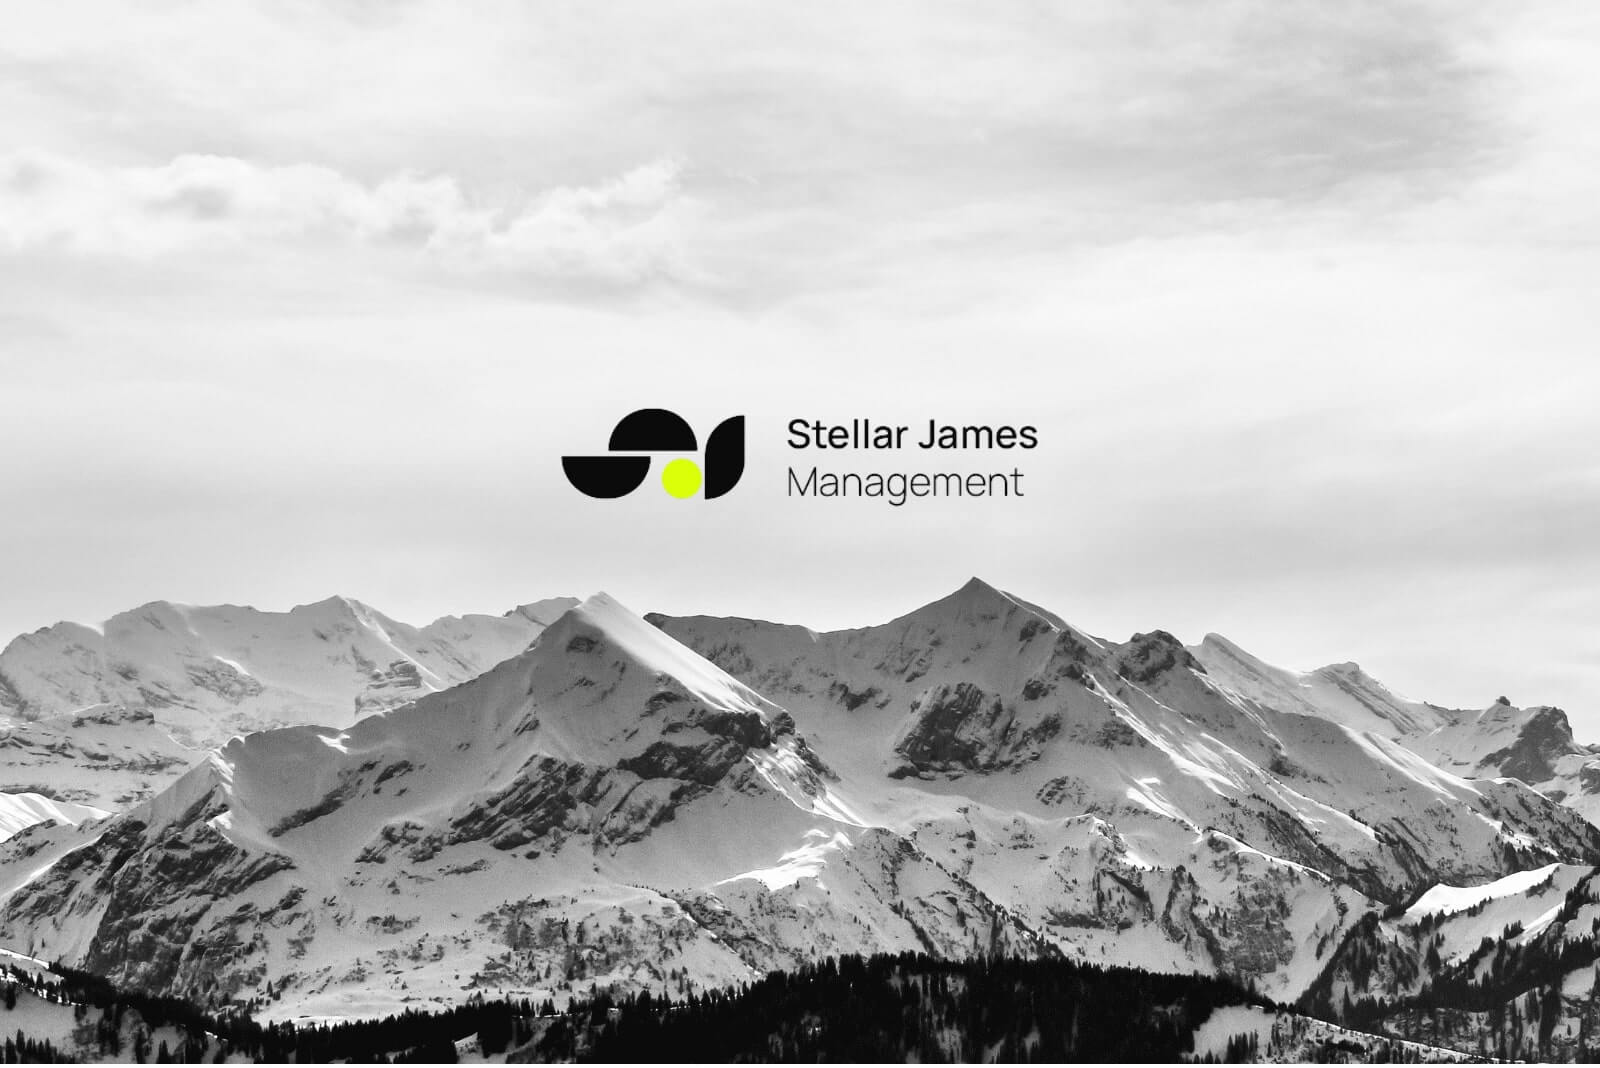 stellar james management